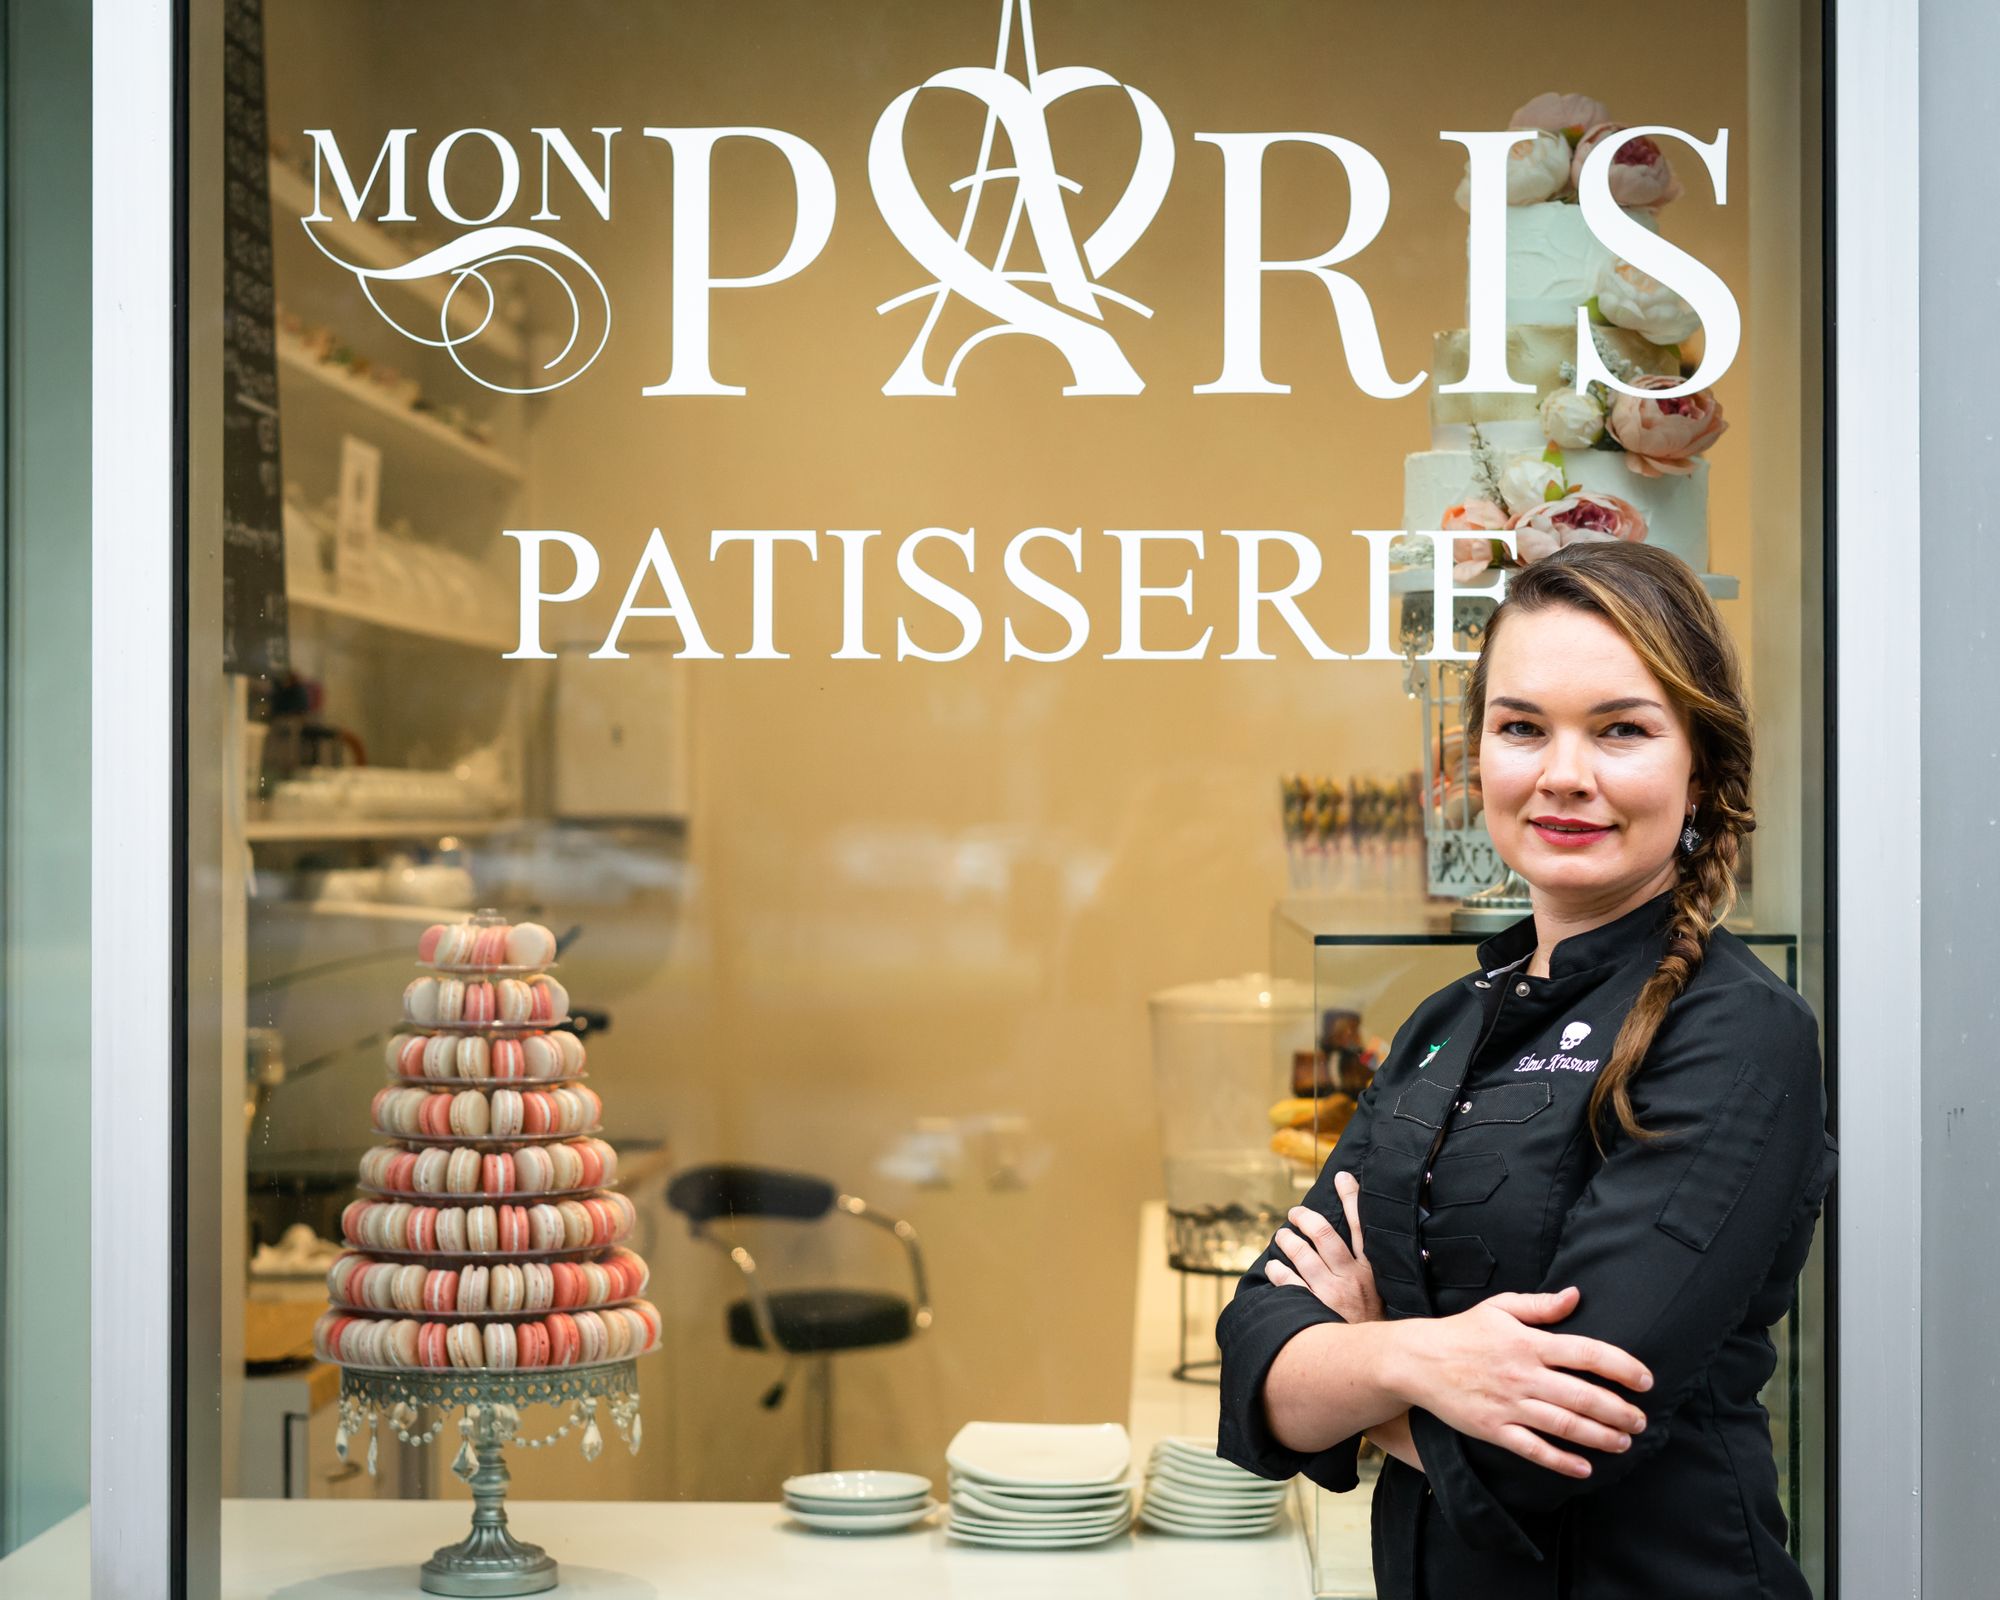 Authentic French Pastry Shop - Mon Paris